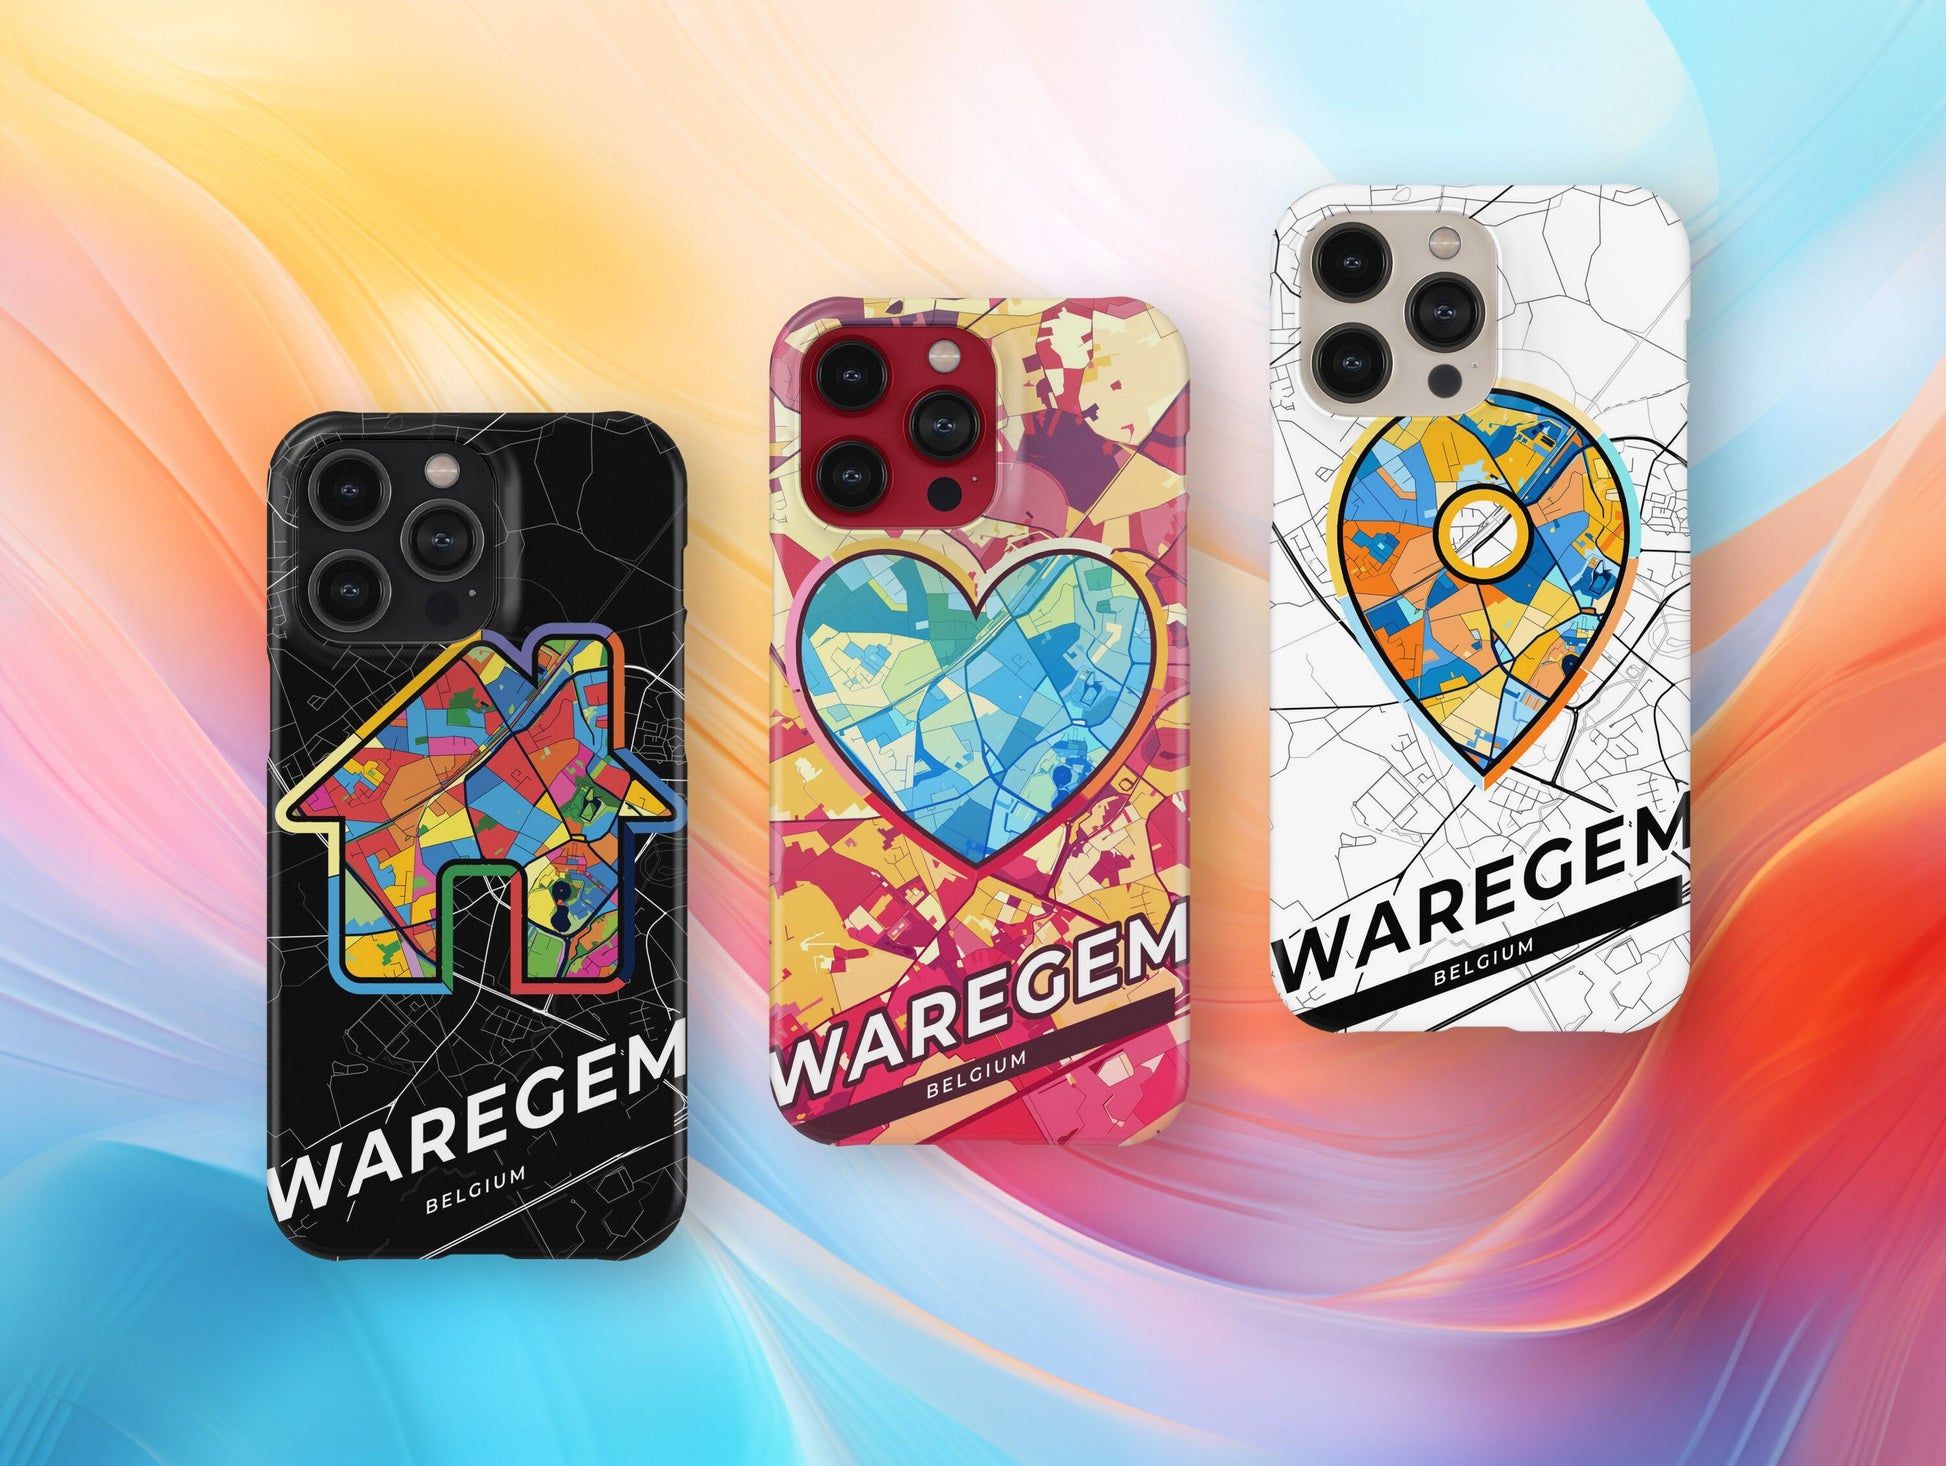 Waregem Belgium slim phone case with colorful icon